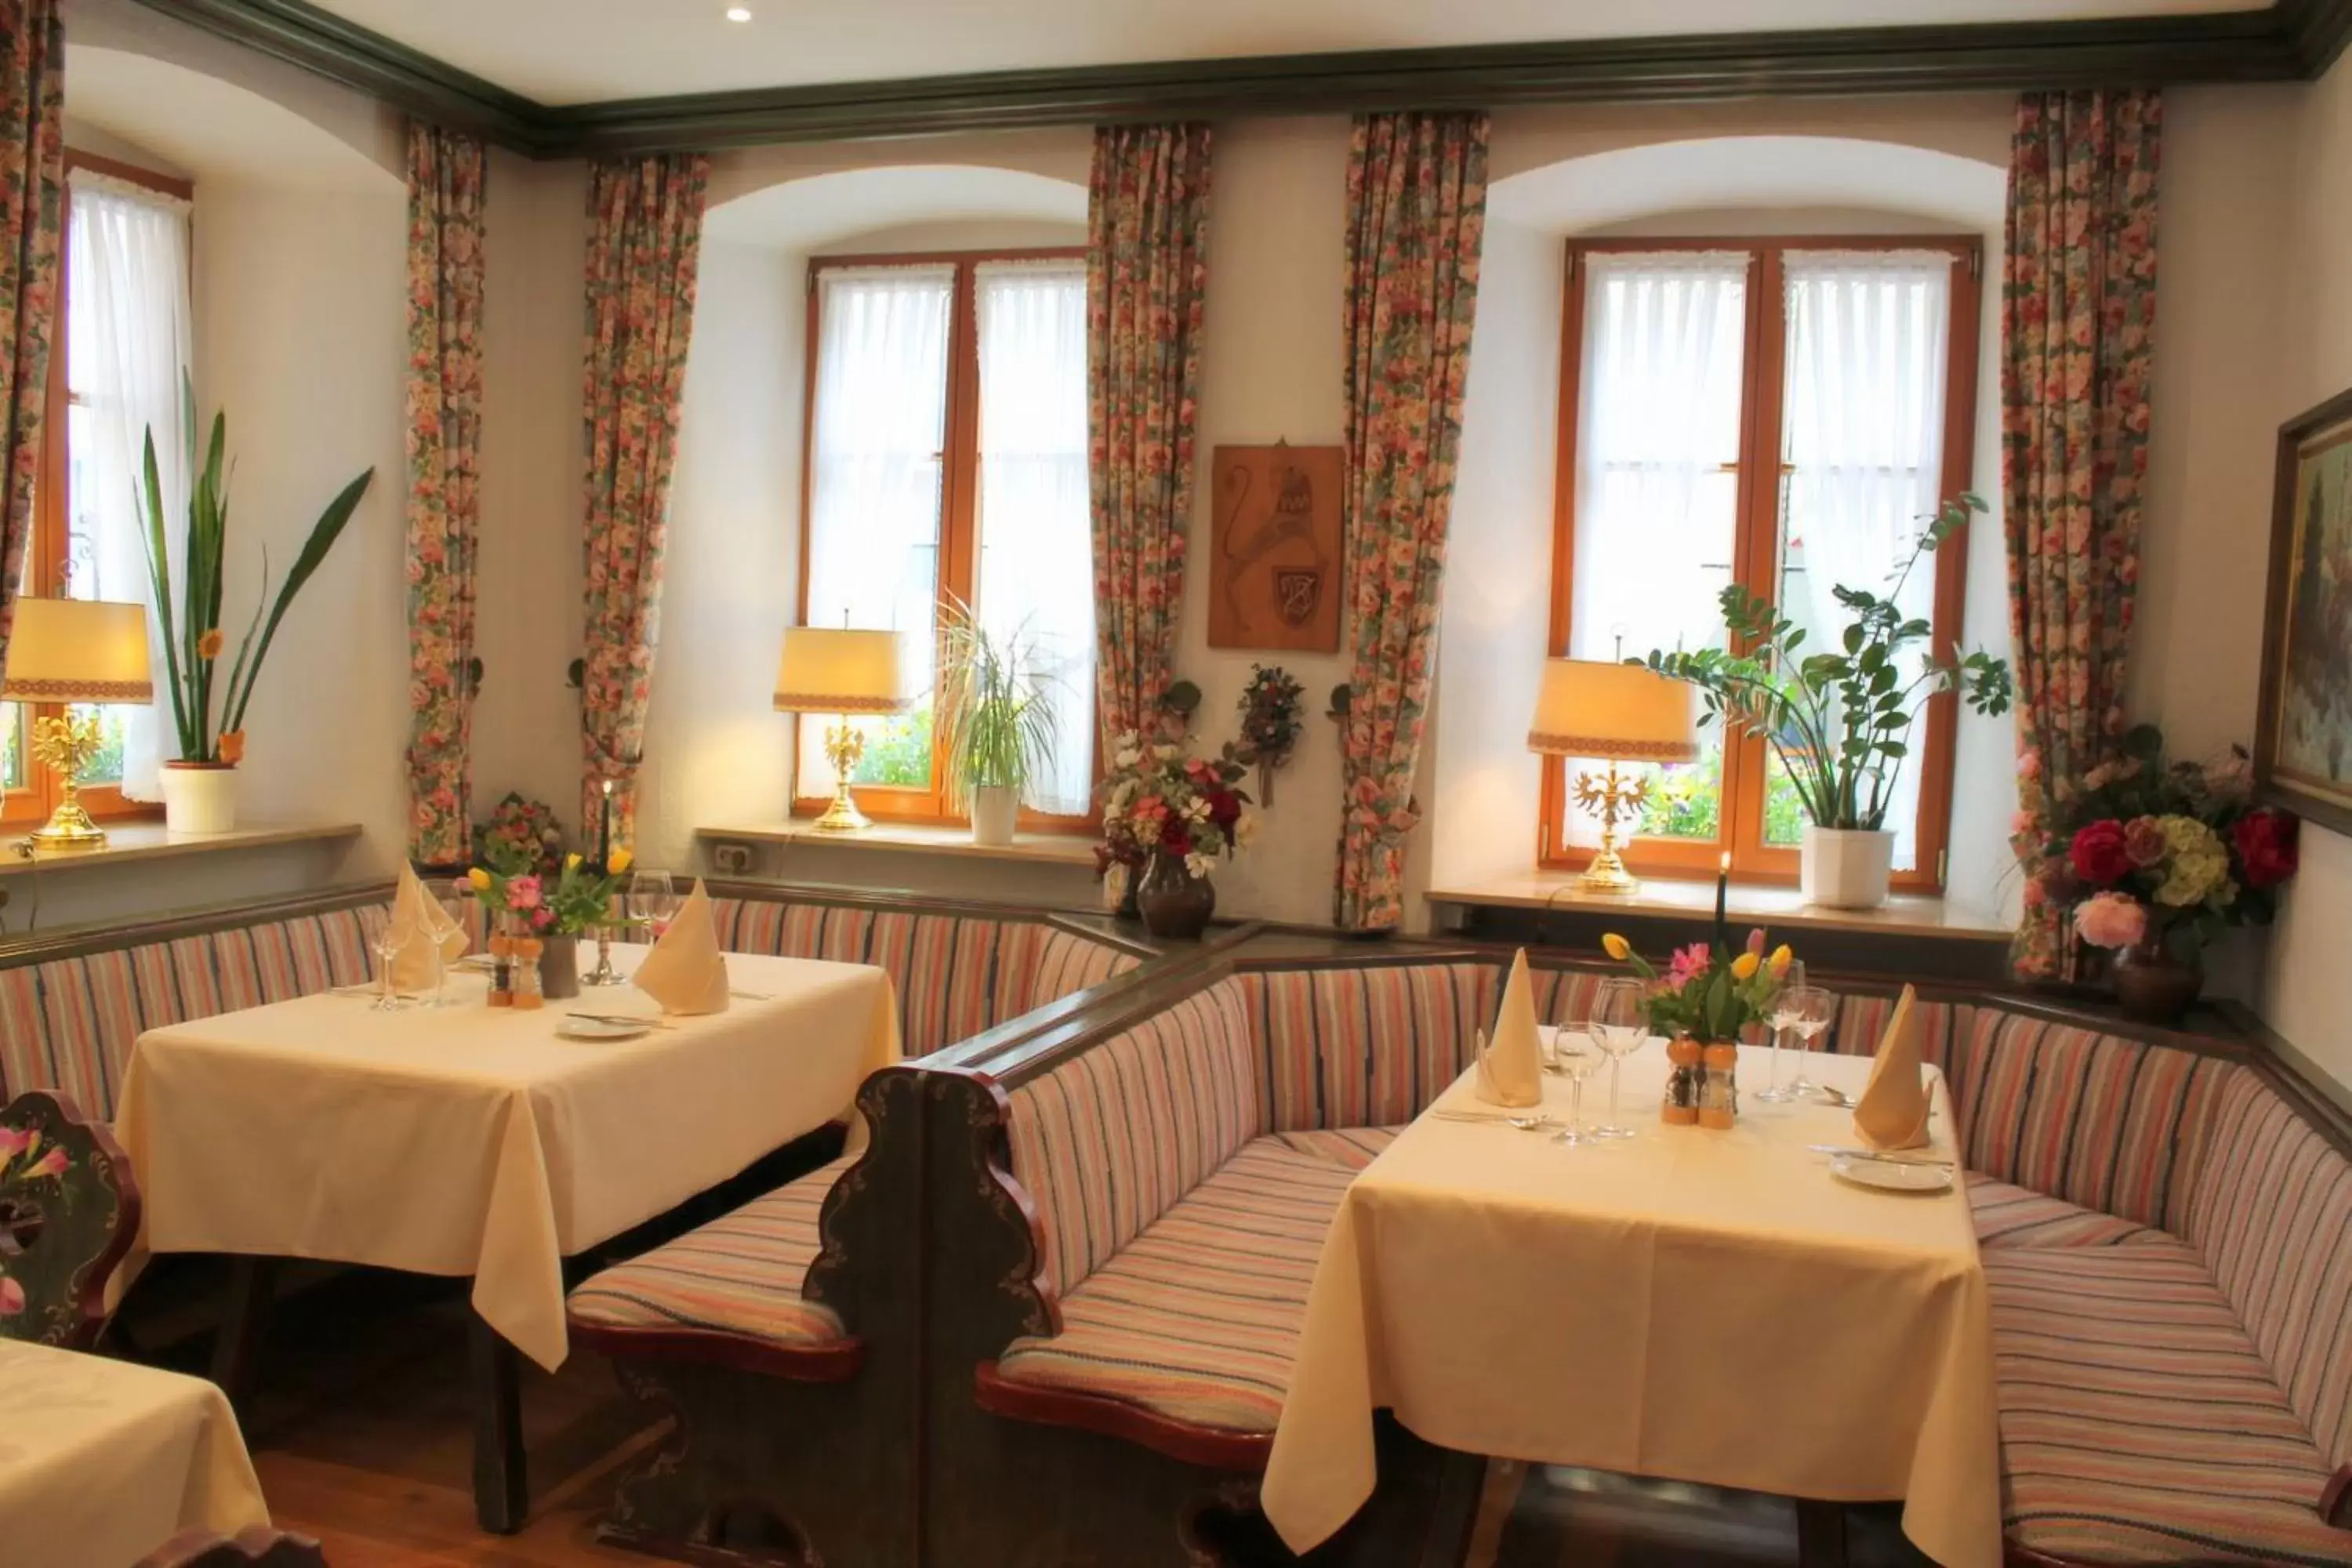 Restaurant/Places to Eat in Tilman Riemenschneider